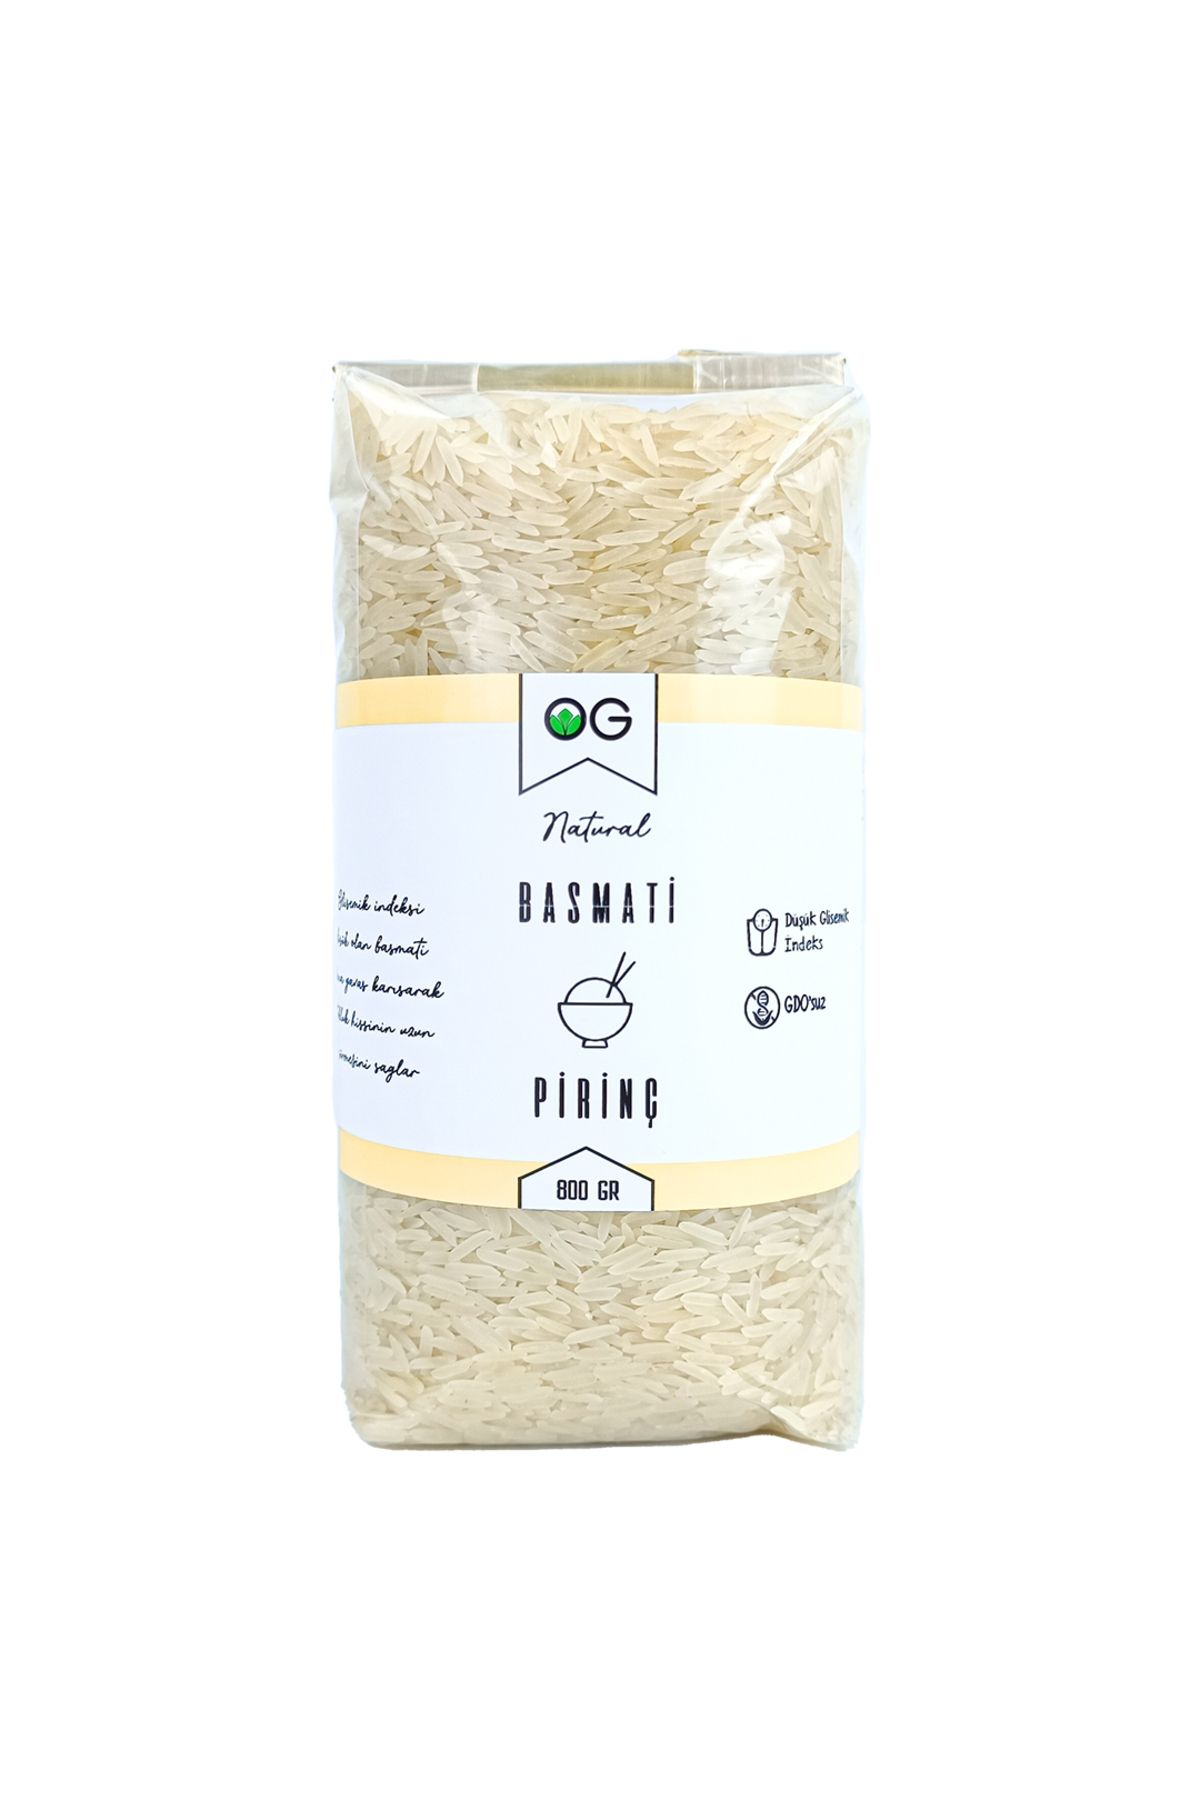 OG natural Basmati Pirinç 800 Gr